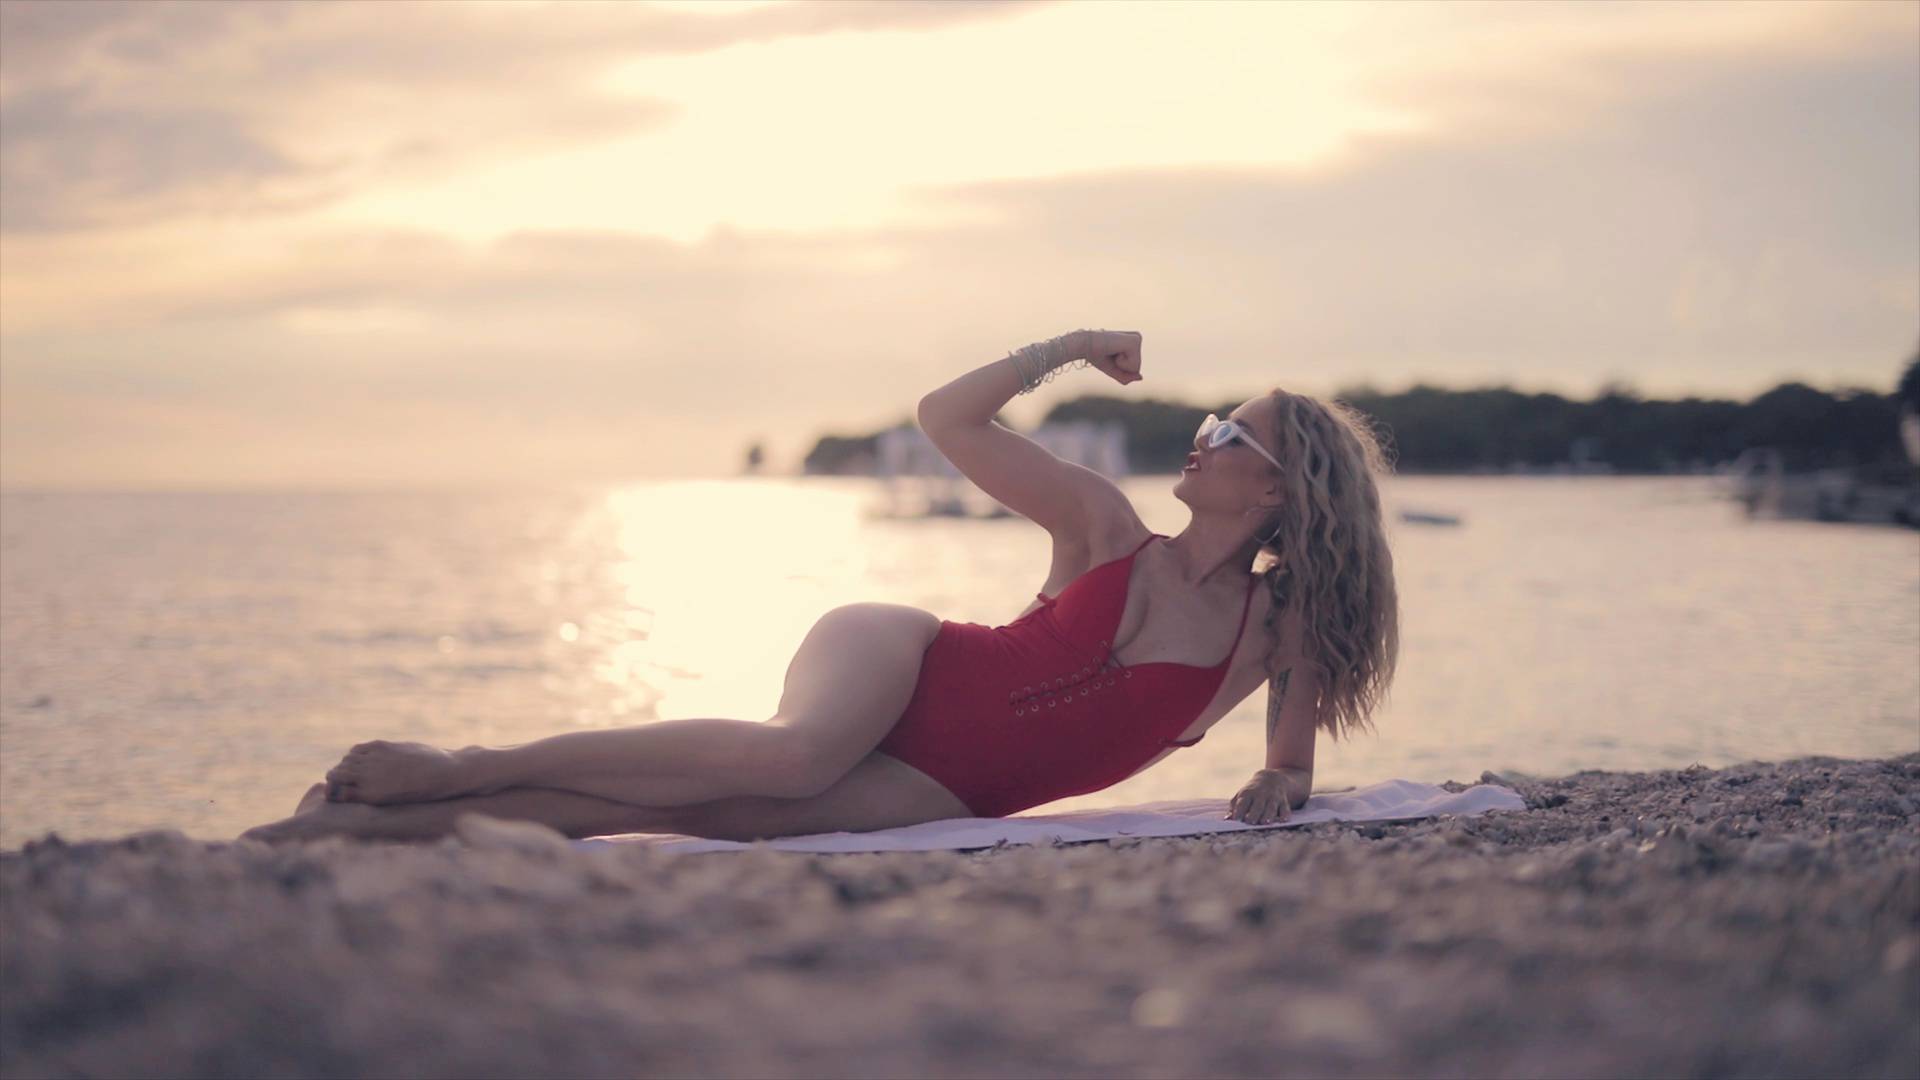 BB Anezi je objavila snimku s nudističke plaže: Sunčam guzu